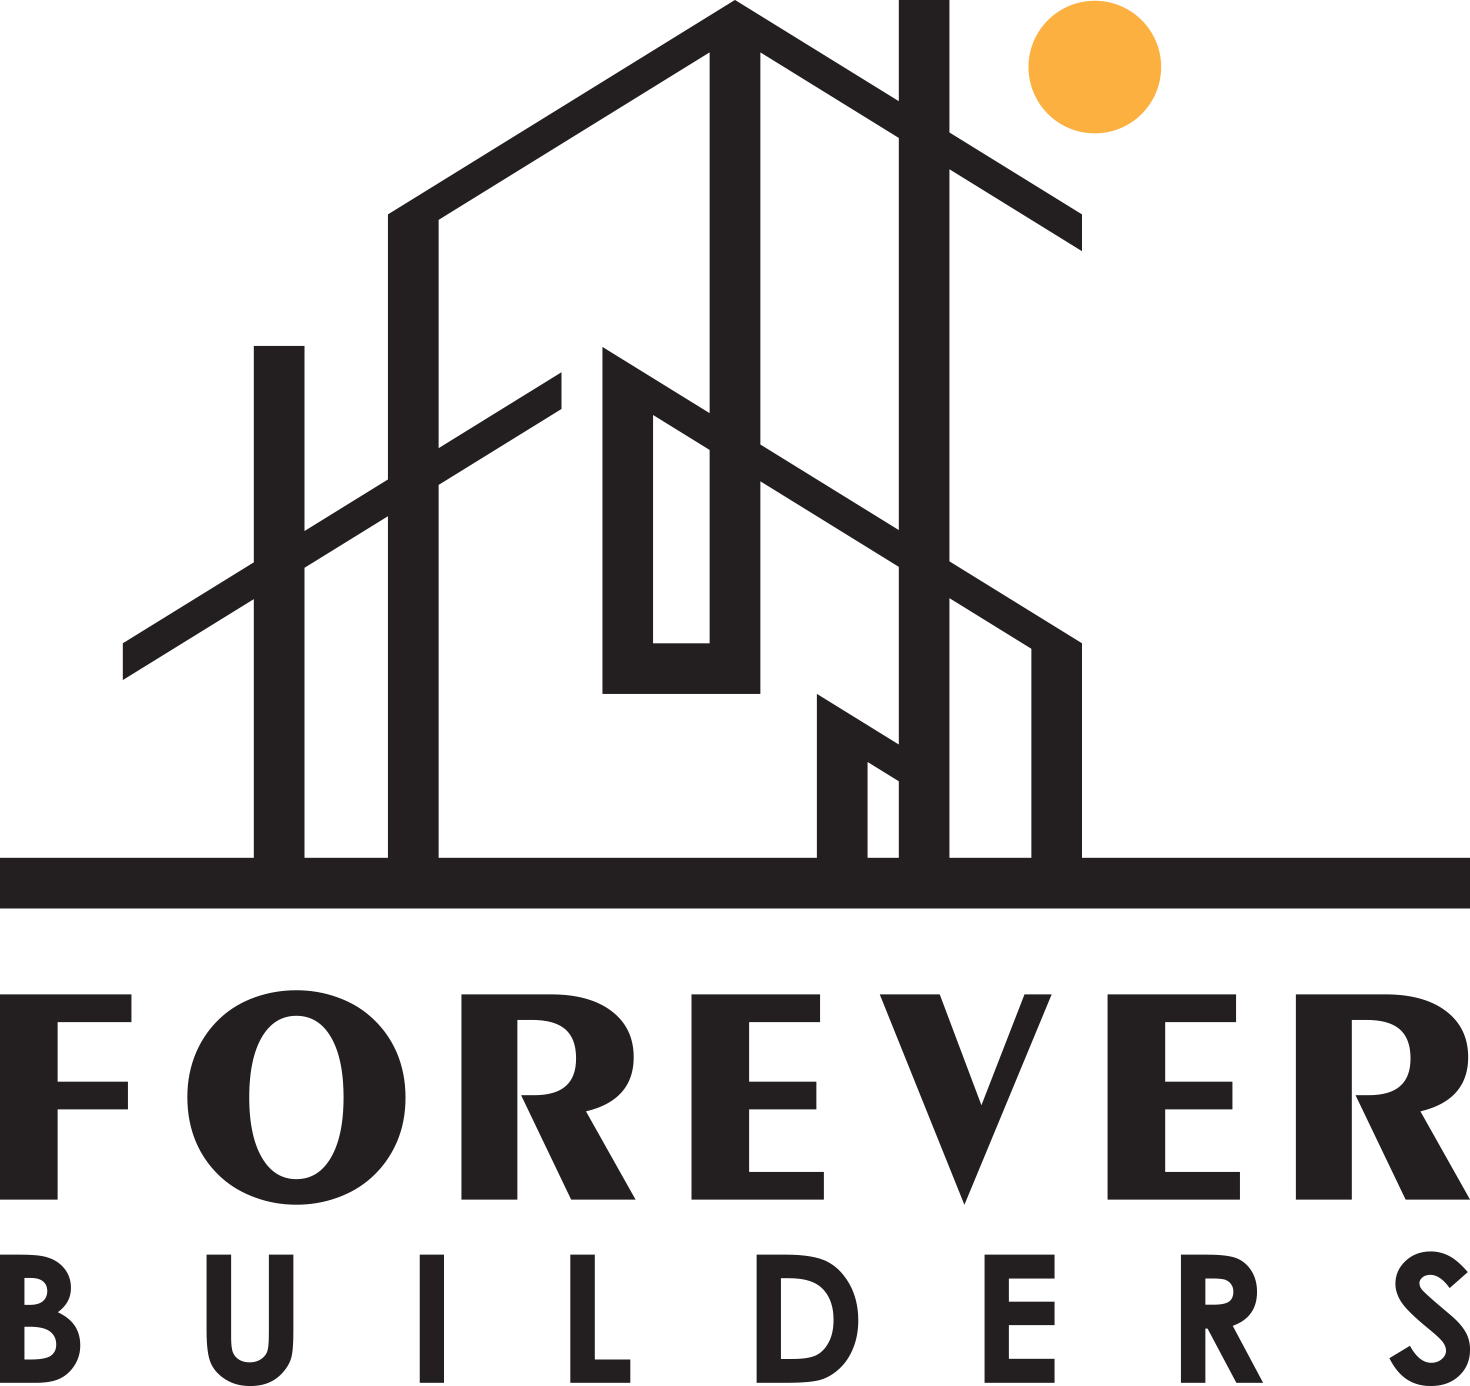 Forever Builders